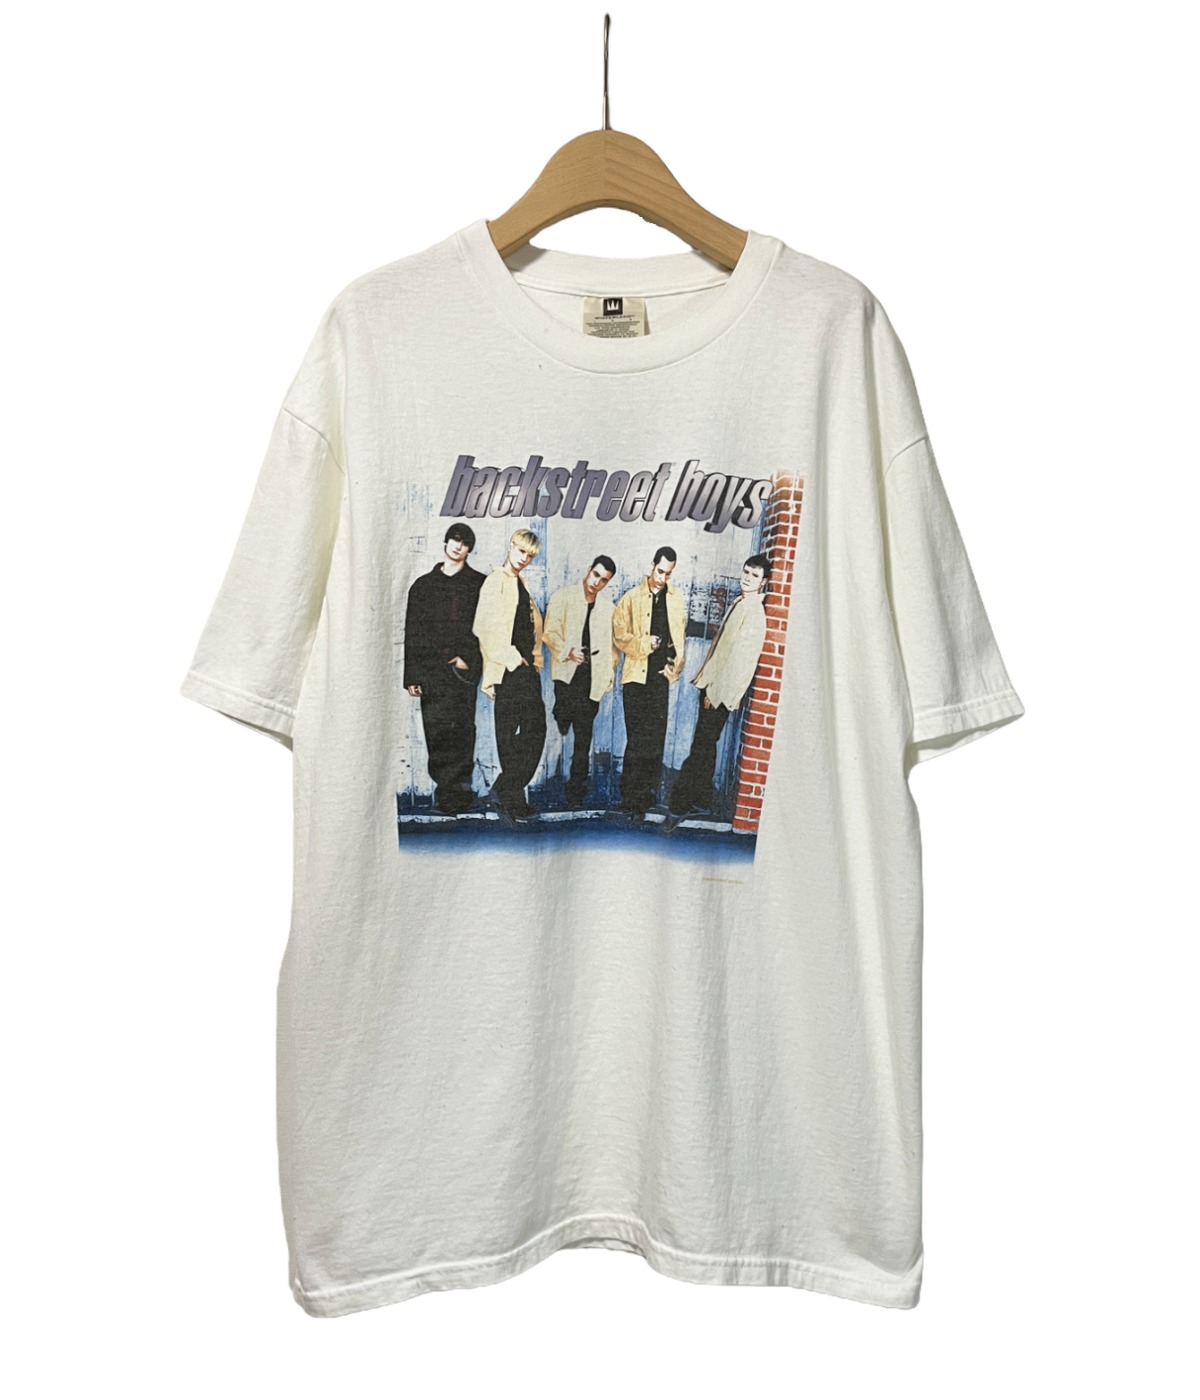 初売りアイテム】Vintage 90s L band T-shirt -backstreet boys 